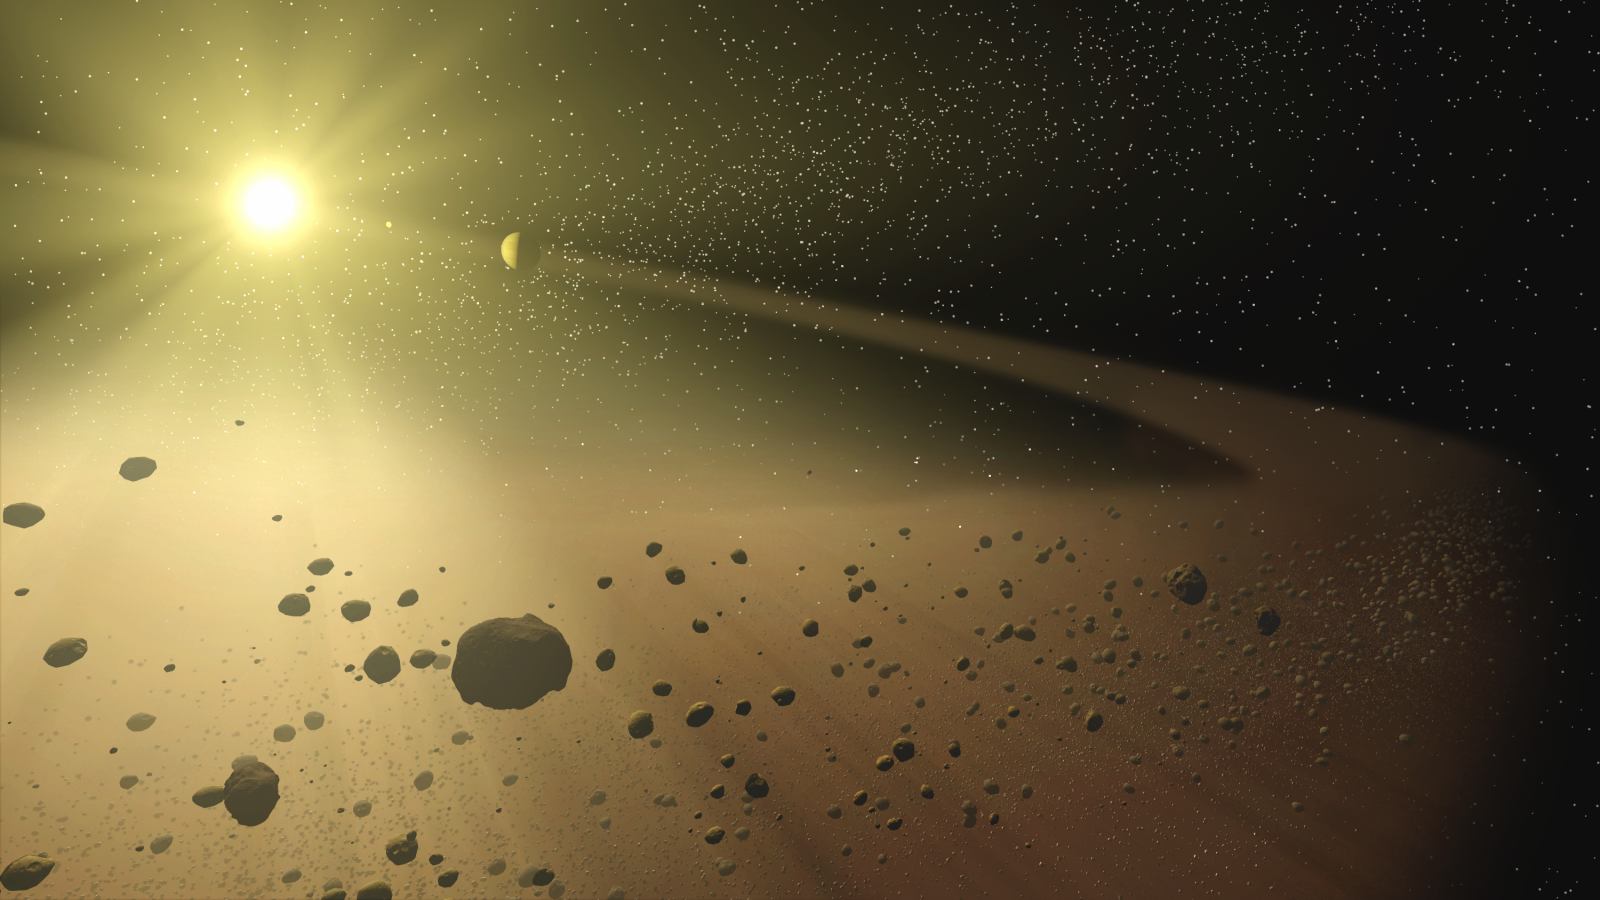 Sans les planètes géantes et gazeuses, les rocheuses proches de l’étoile-parent subiraient des collisions avec des planétésimaux durant plusieurs centaines de millions d’années, voire des milliards d’années, selon des simulations. © Nasa, JPL-Caltech, T. Pyle (SSC)